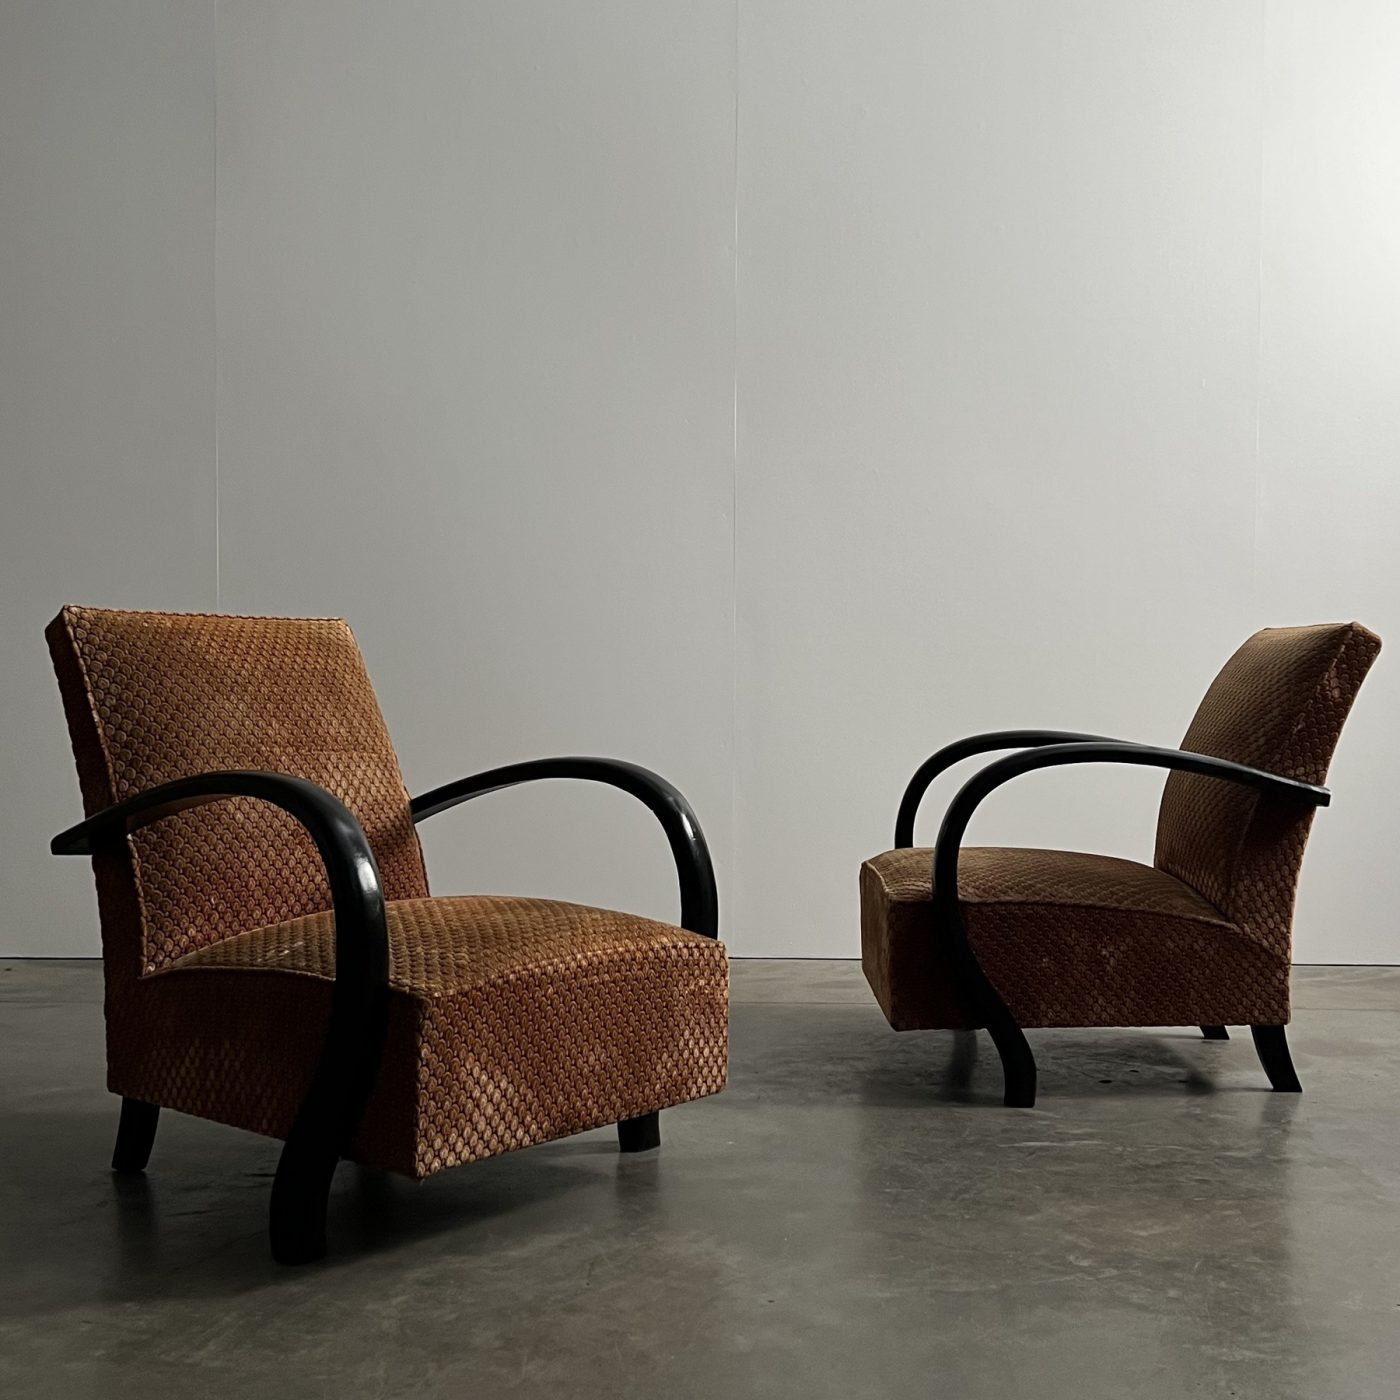 objet-vagabond-artdeco-armchairs0005